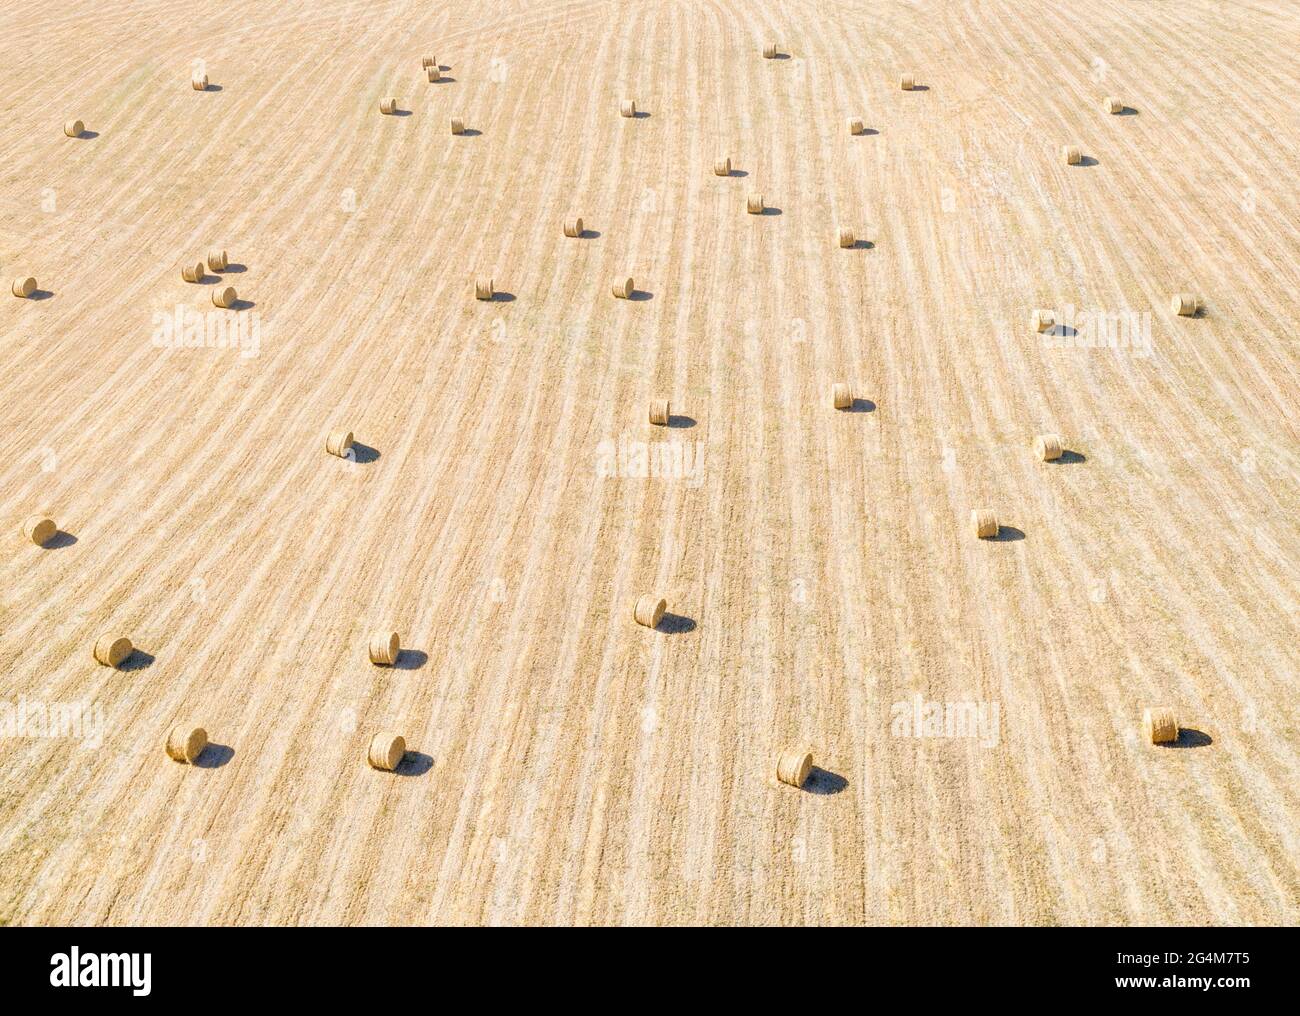 Campo de heno a distancia, panorama aéreo con patrón rayado y fardos de heno en una hilera Foto de stock